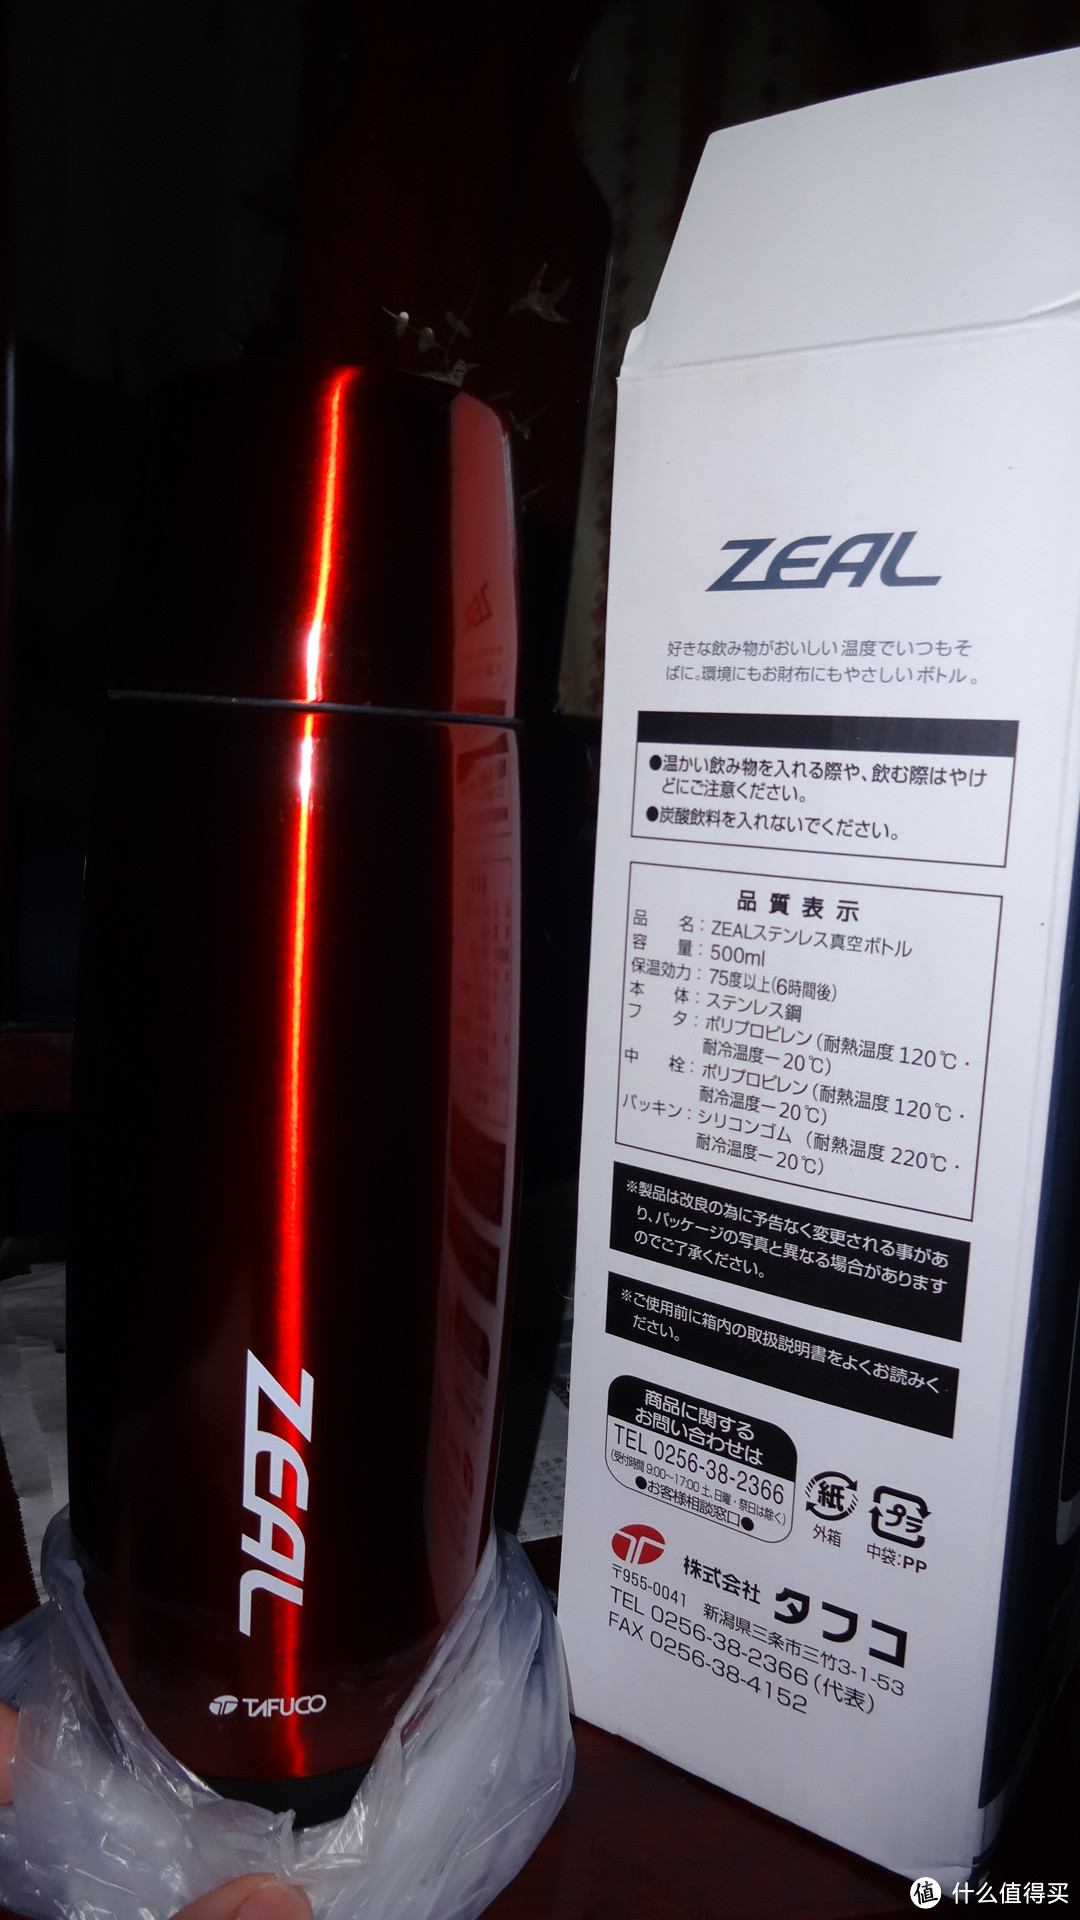 TAFUCO 泰福高 zeal T-1561 500ml 和next T-1051 480ml  的两个保温瓶对比